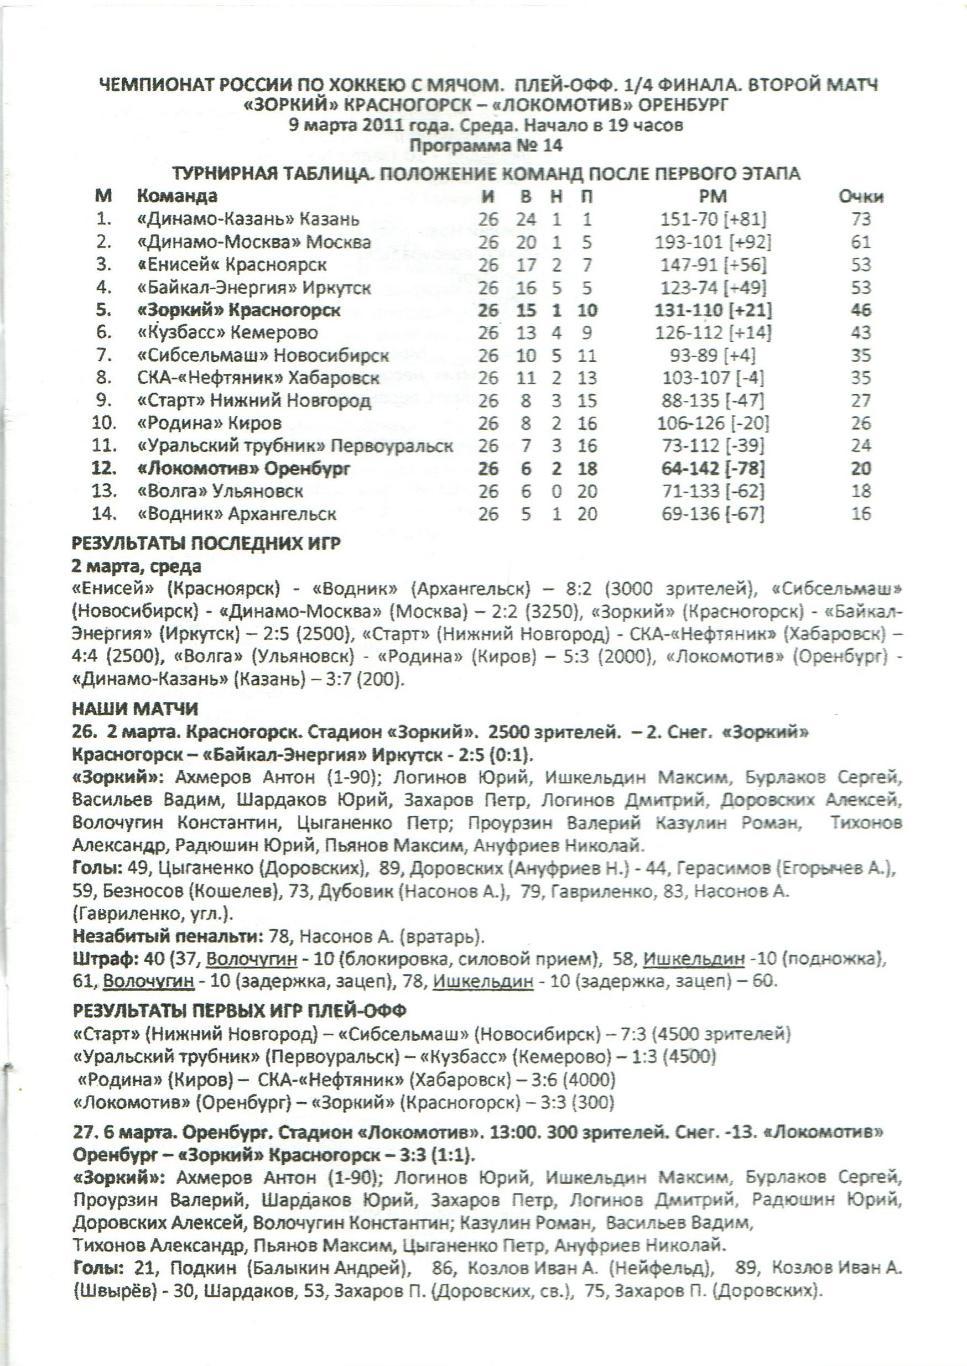 Зоркий Красногорск – Локомотив Оренбург 09.03.2011 Плей-офф 1